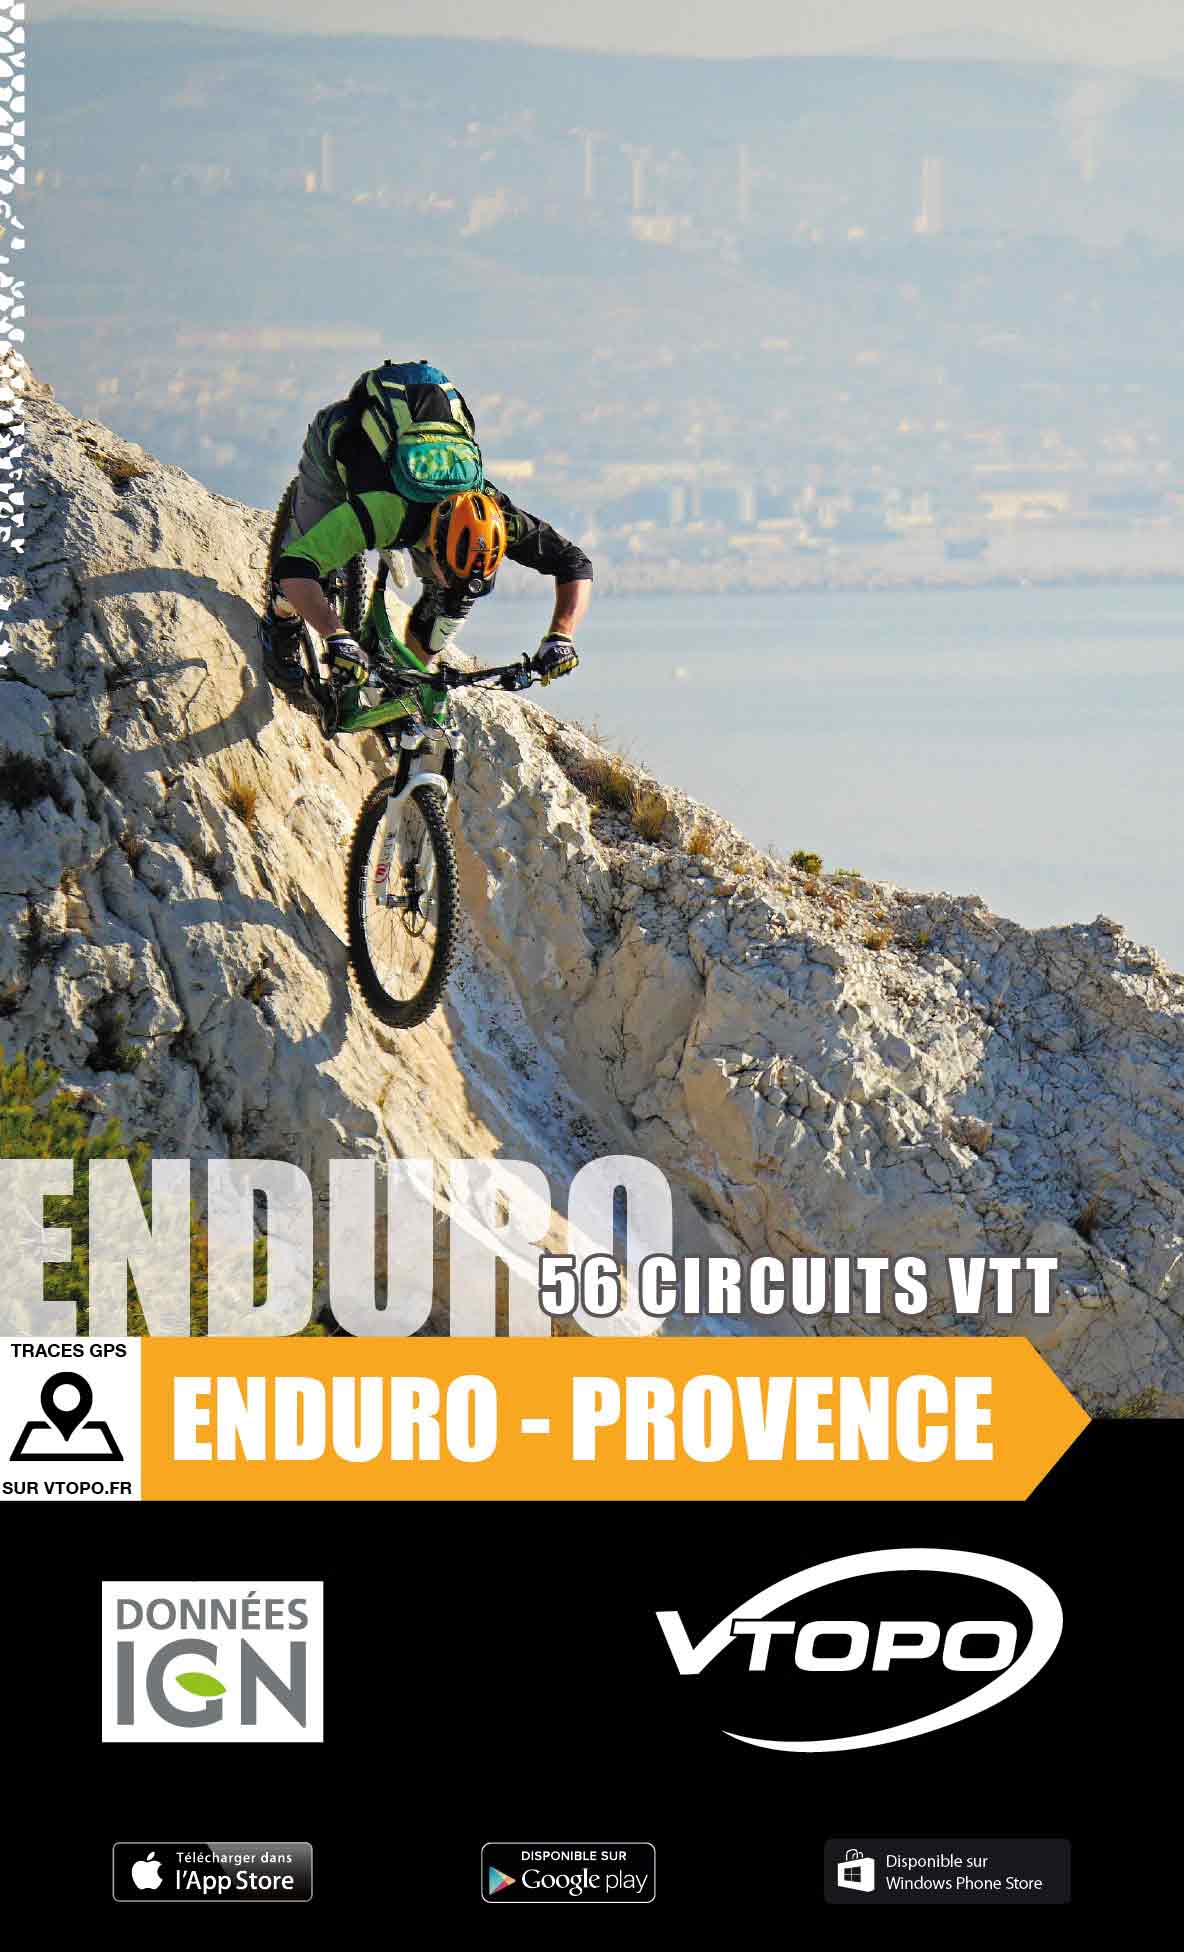 VTOPO VTT Enduro Provence